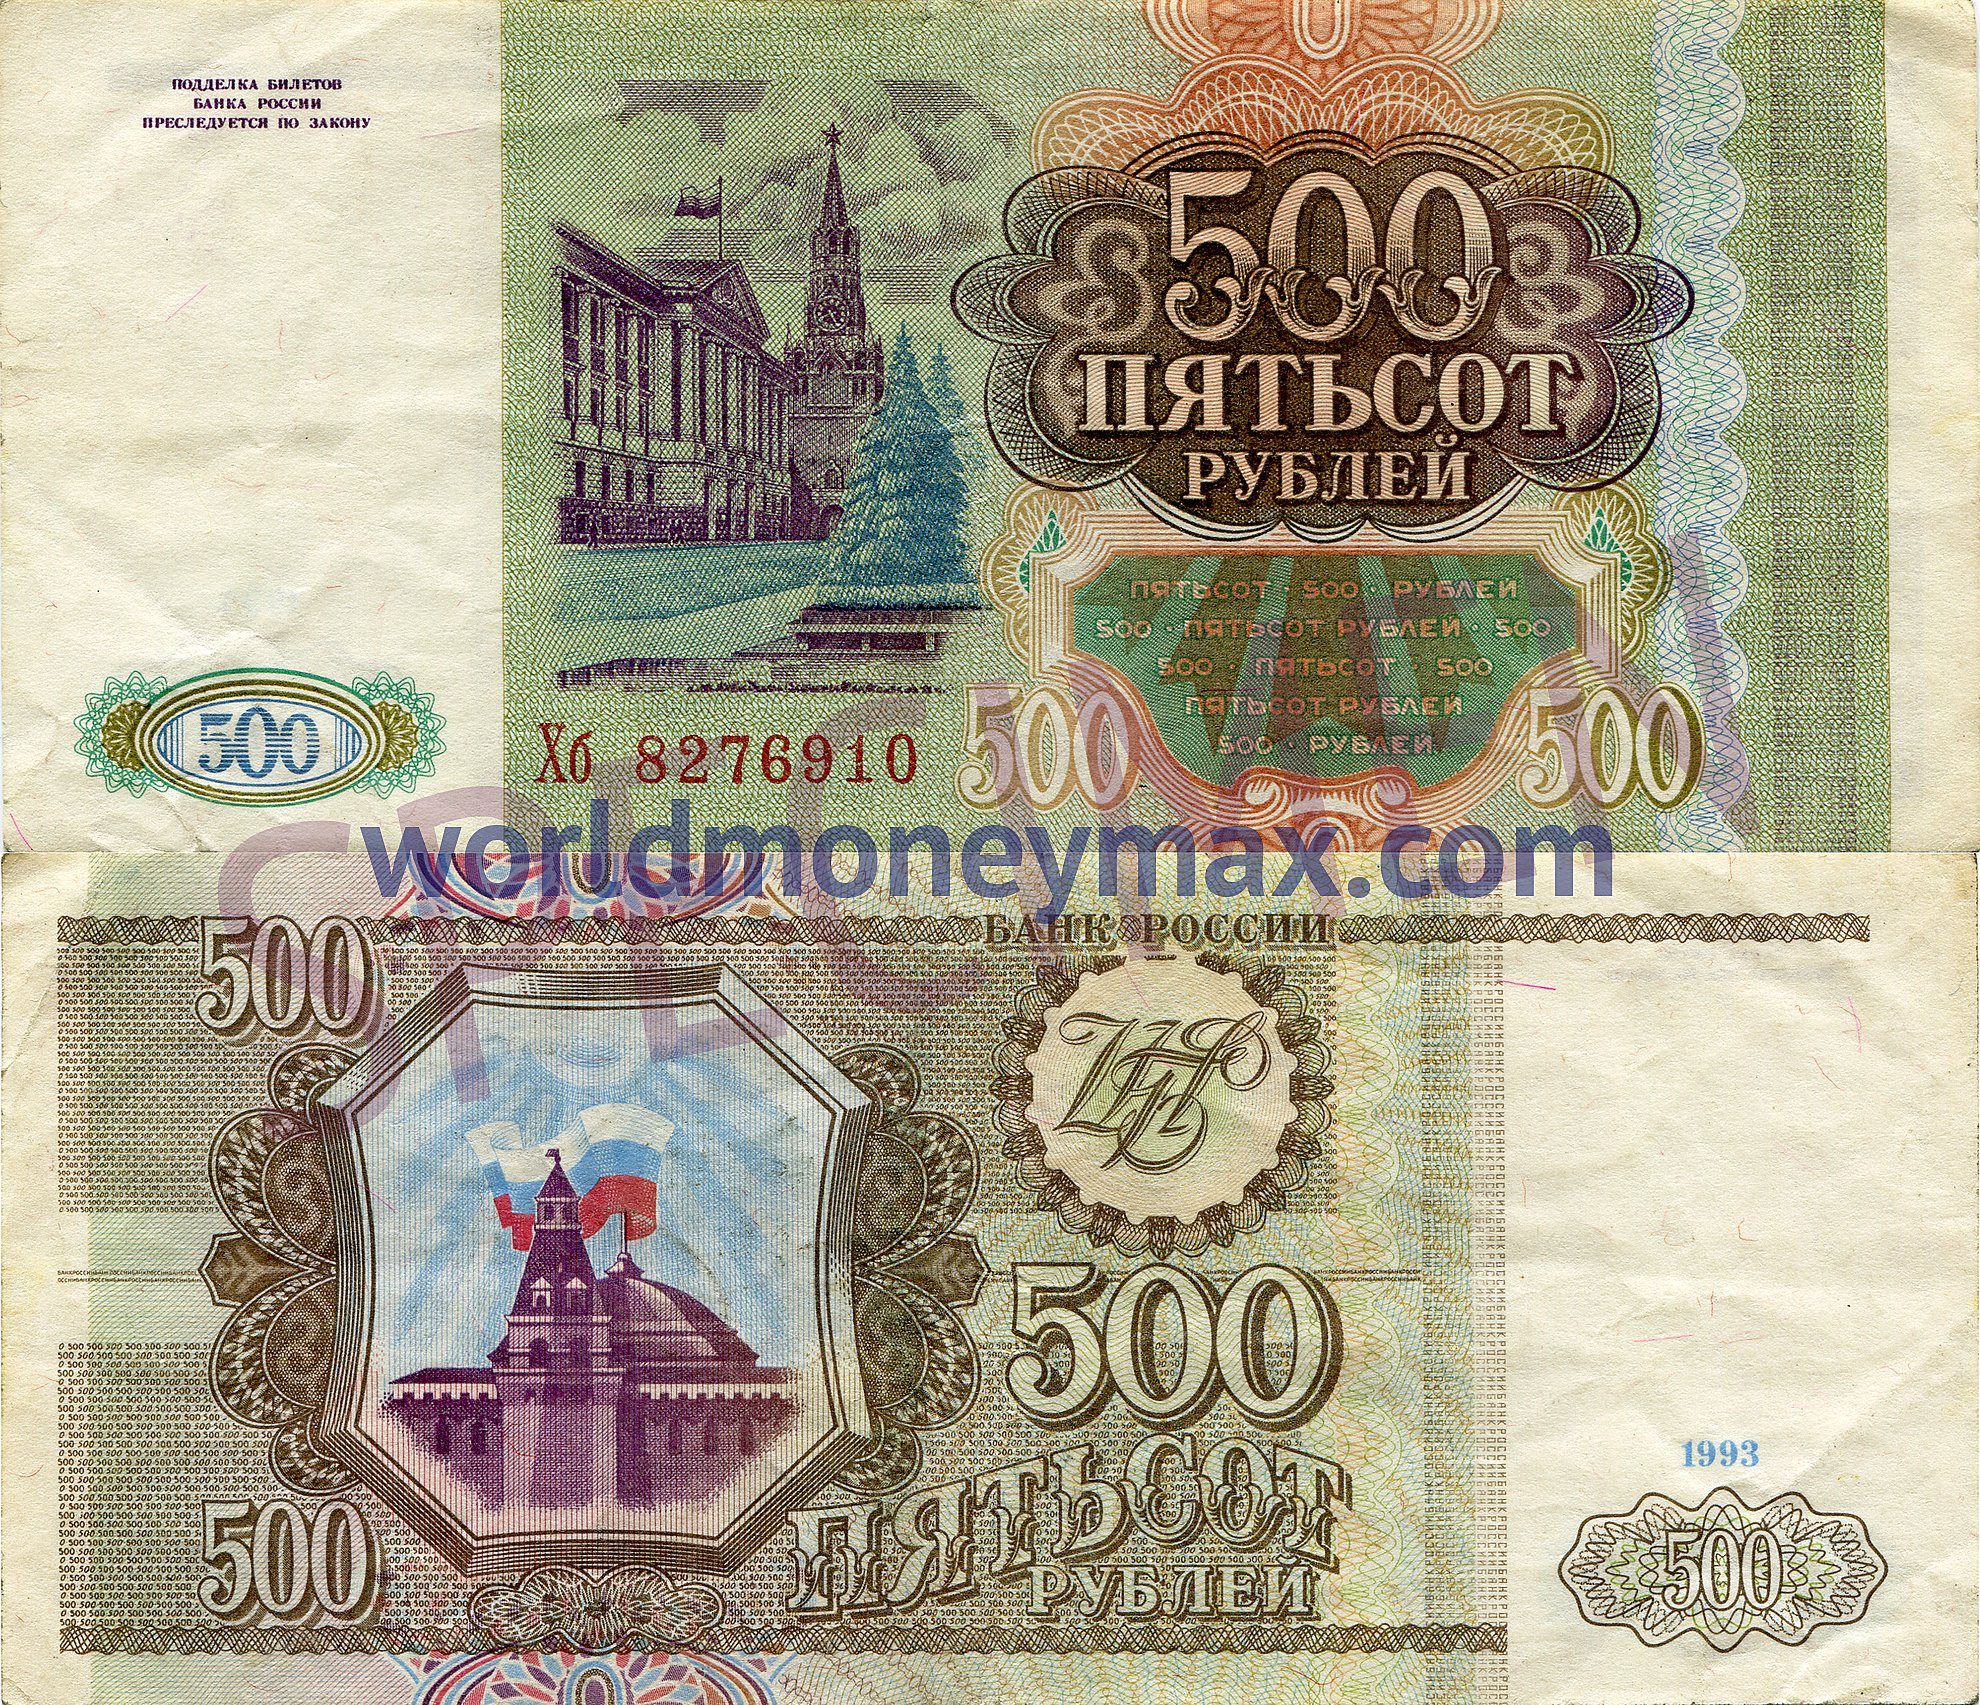 500 рублей 1993 цена. 500 Рублей 1993. Купюра 500 рублей 1993 года. Пятьсот рублей 1993 года. Банкнота 500 рублей 1993.